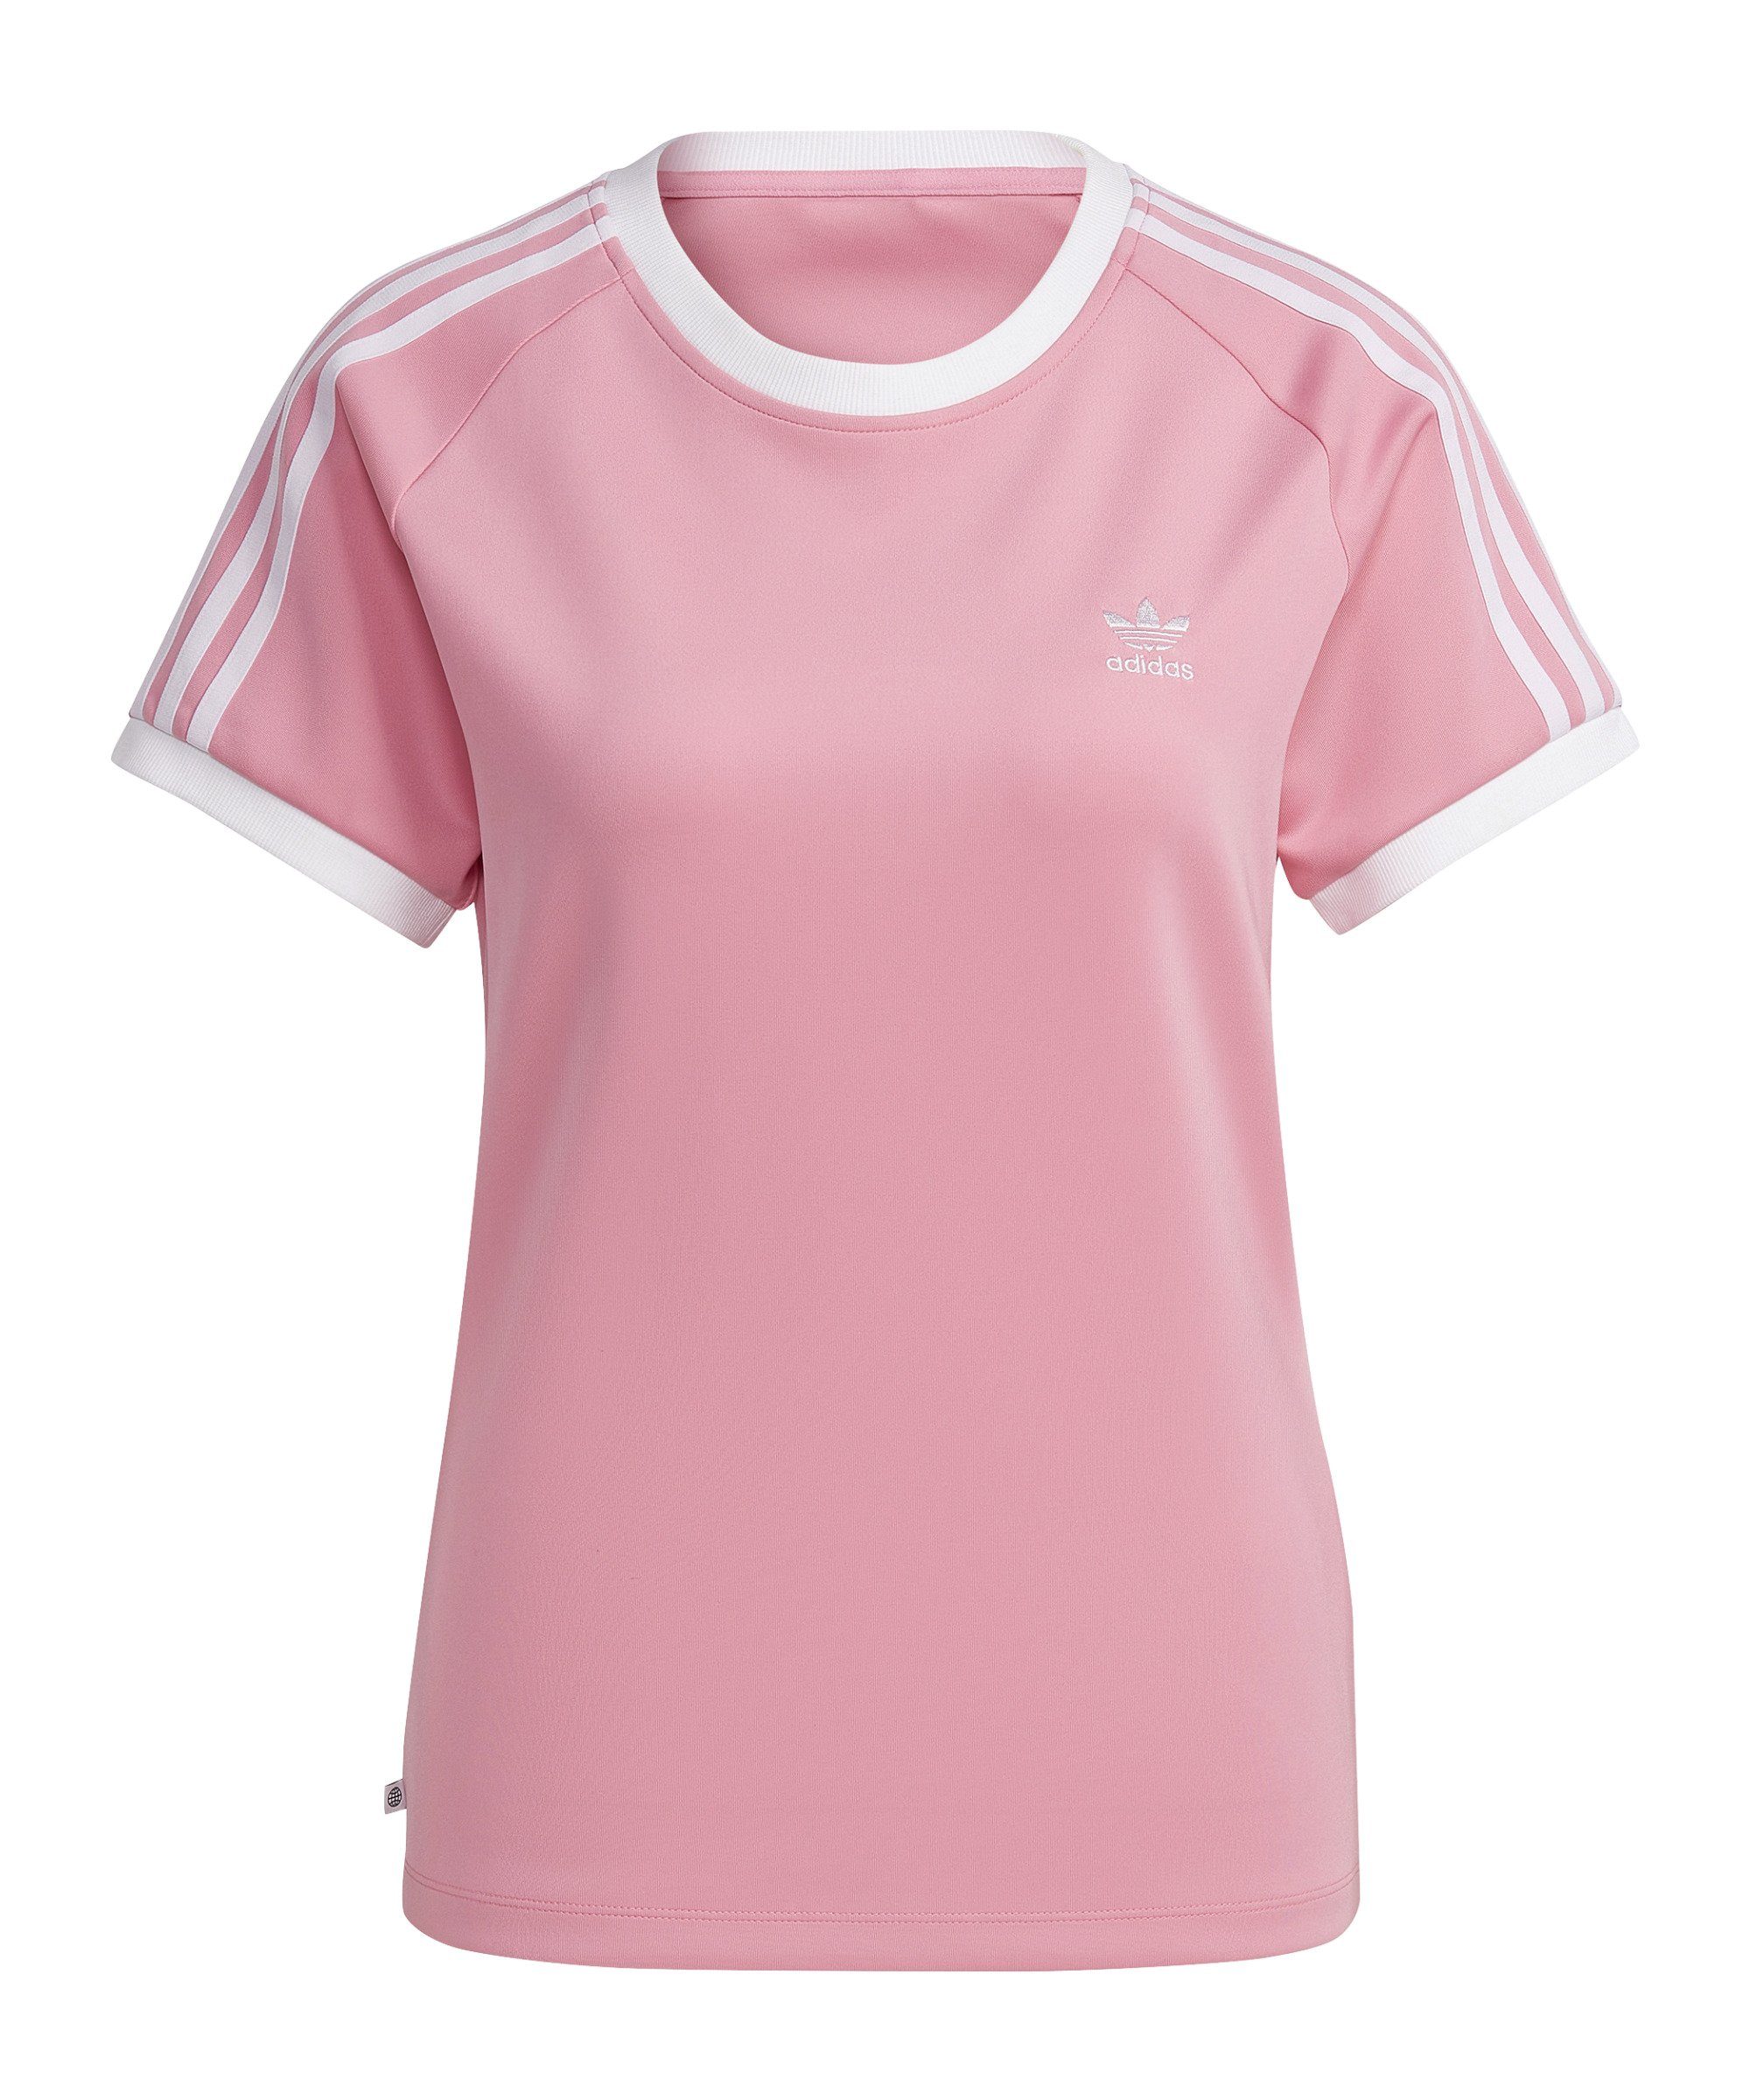 adidas Originals T-Shirt 3S Slim T-Shirt Damen default rosa